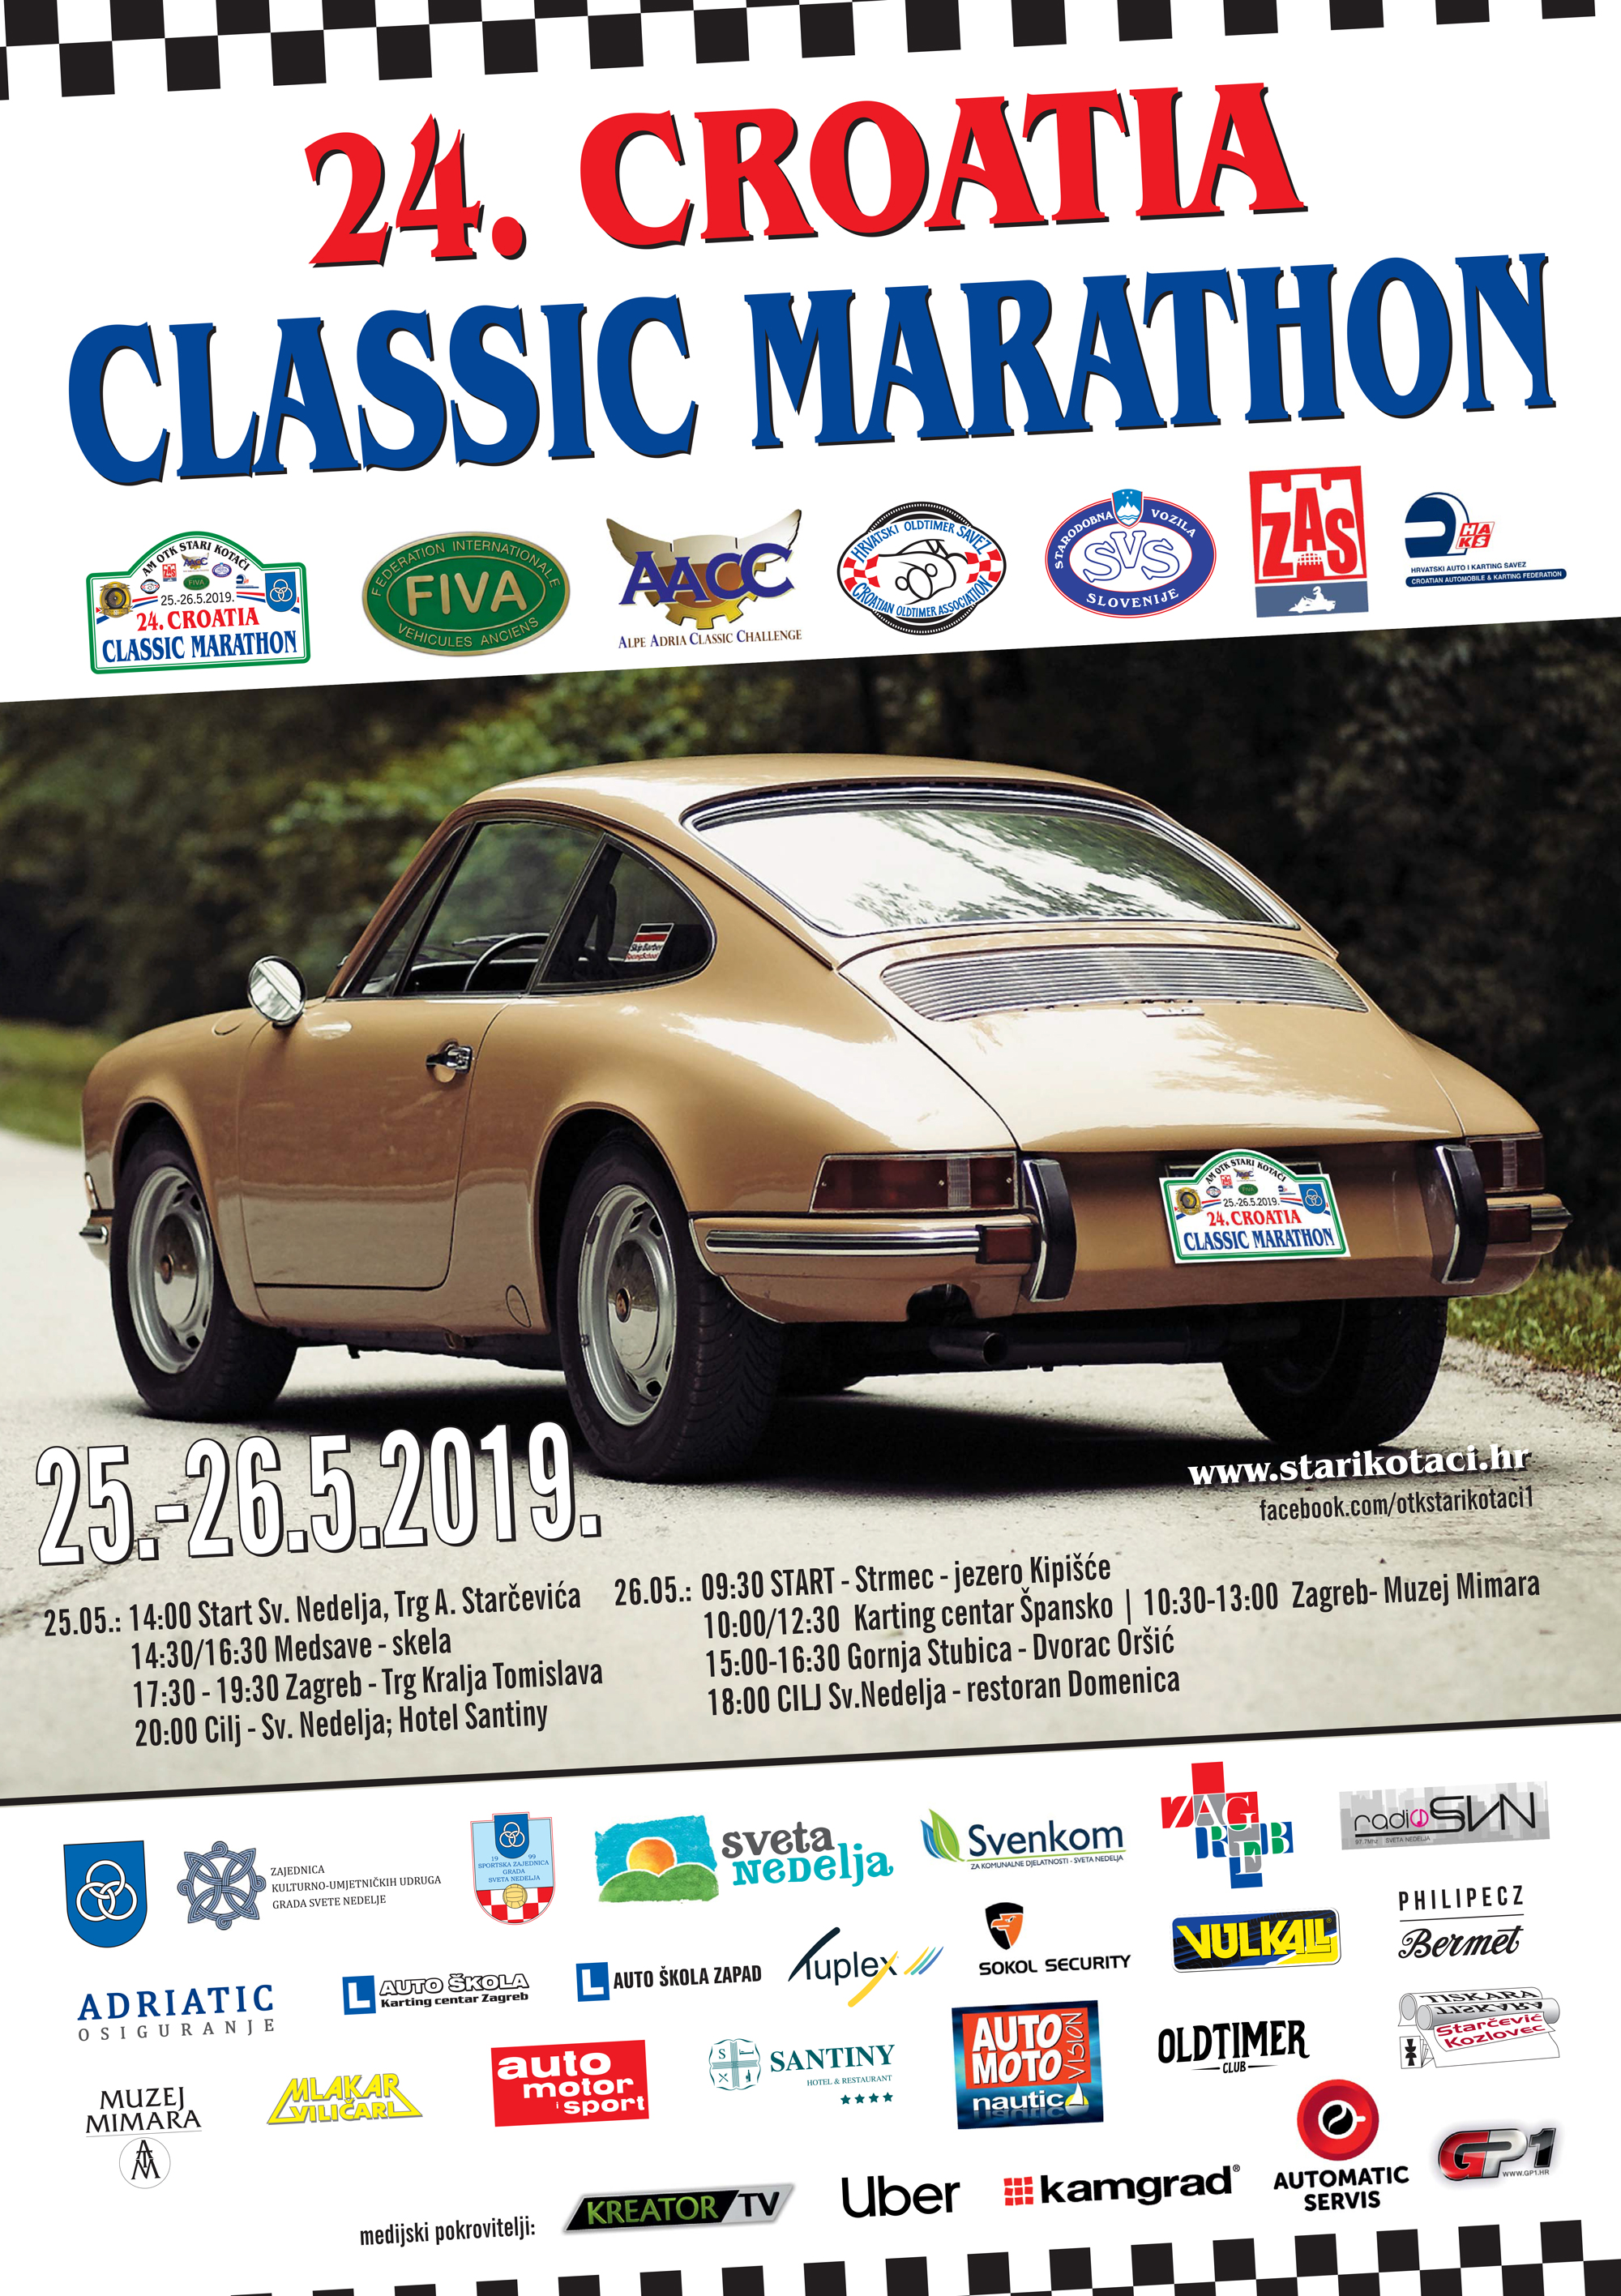 “Stari kotači” spremni za 24. Croatia Classic Marathon